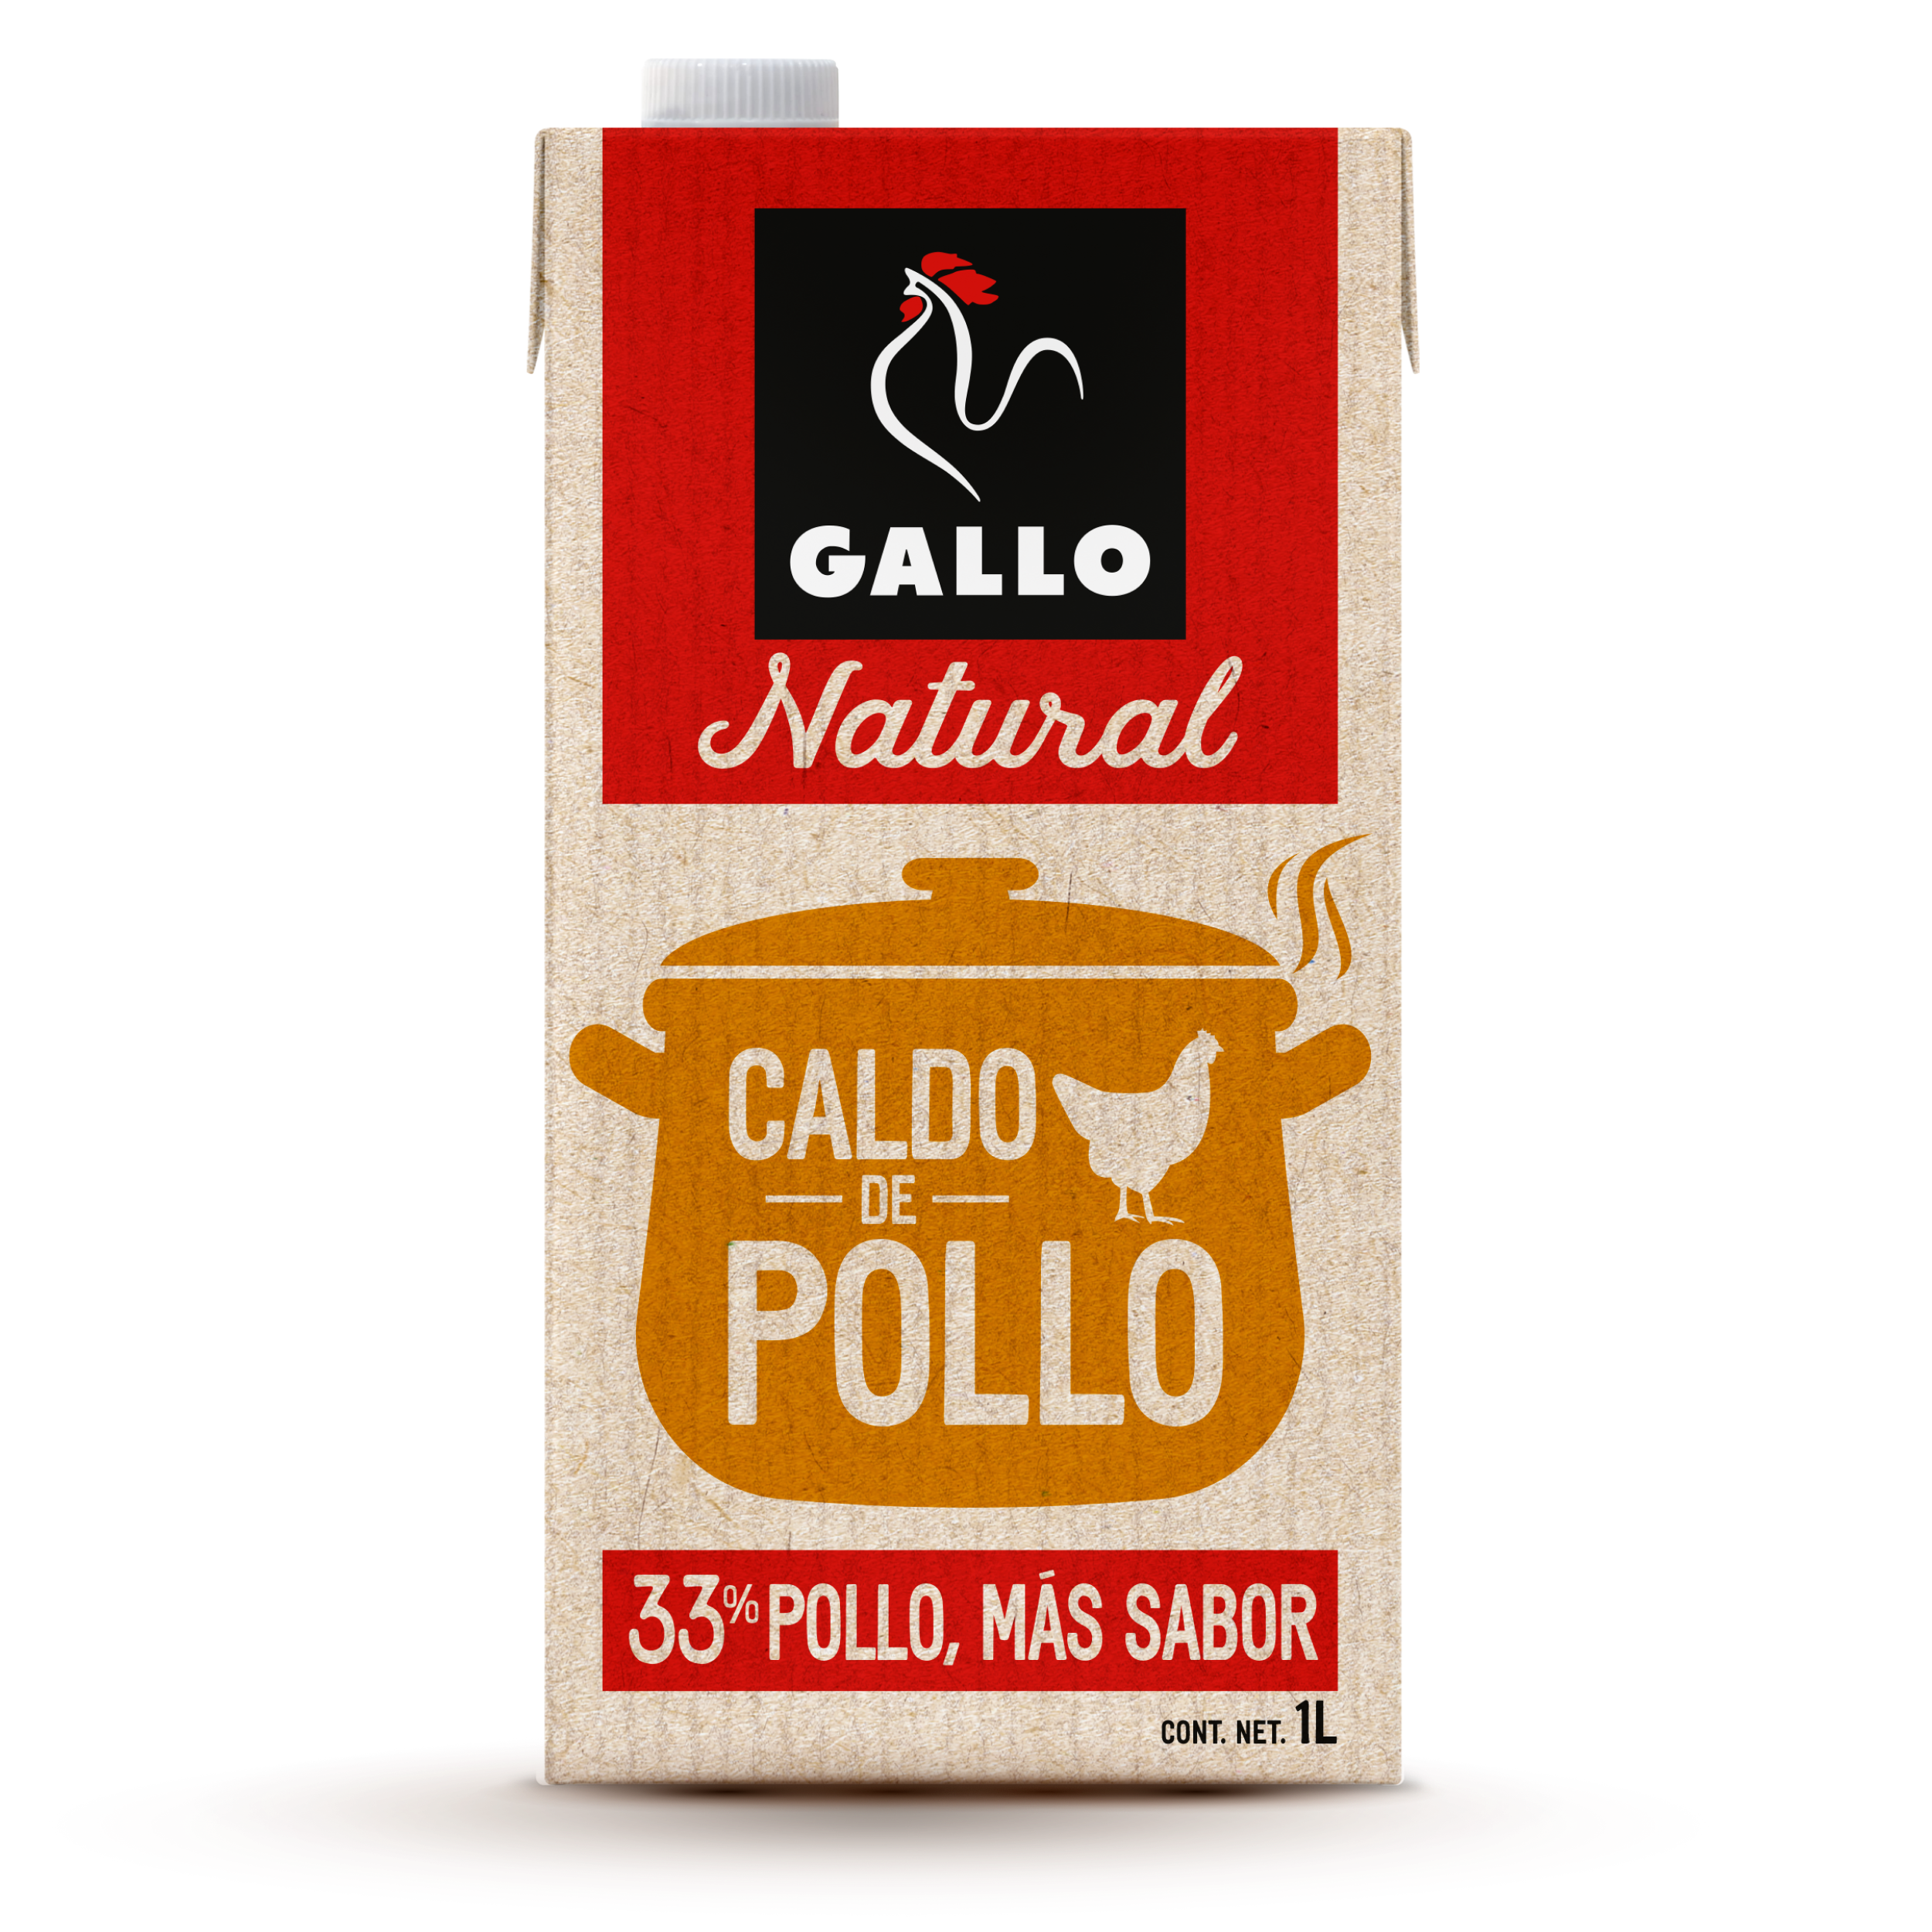 ashraf pm recommends Pack Caldo De Pollo